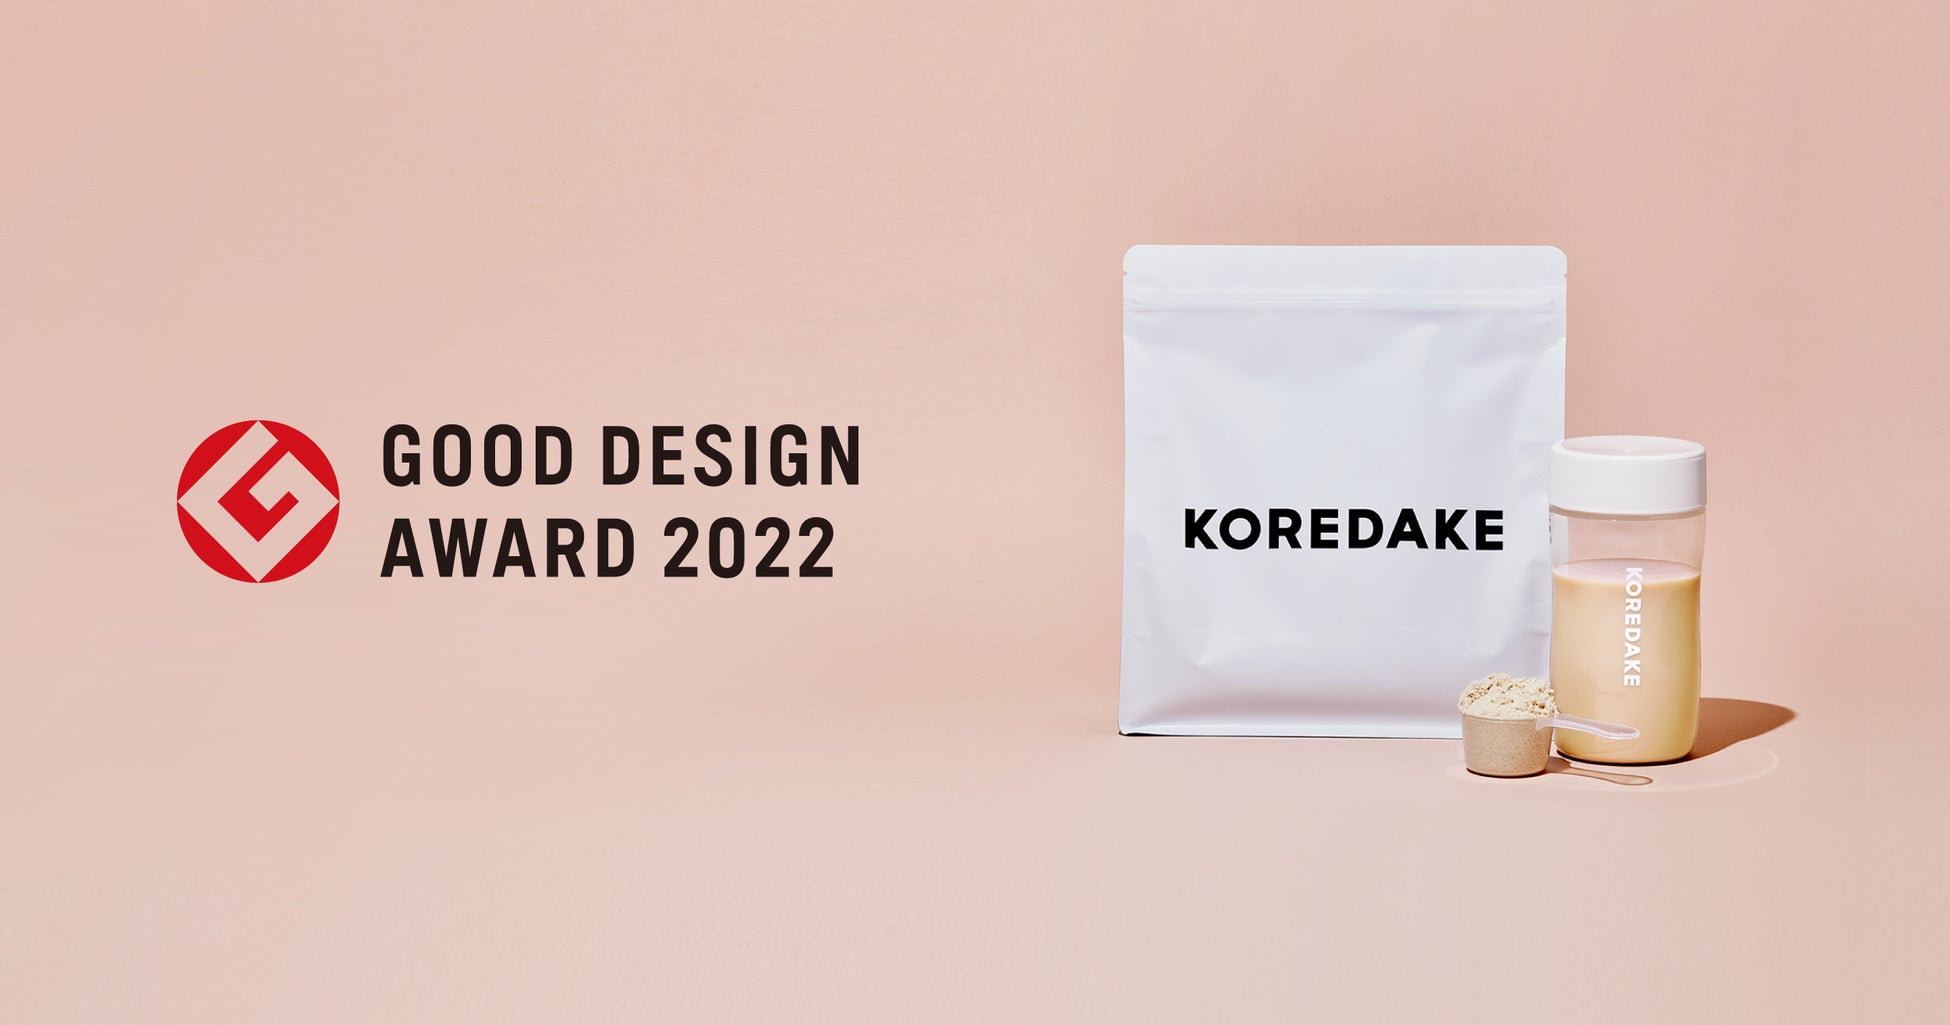 ウェルネスプロテイン『KOREDAKE』が「2022年度グッドデザイン賞」を受賞